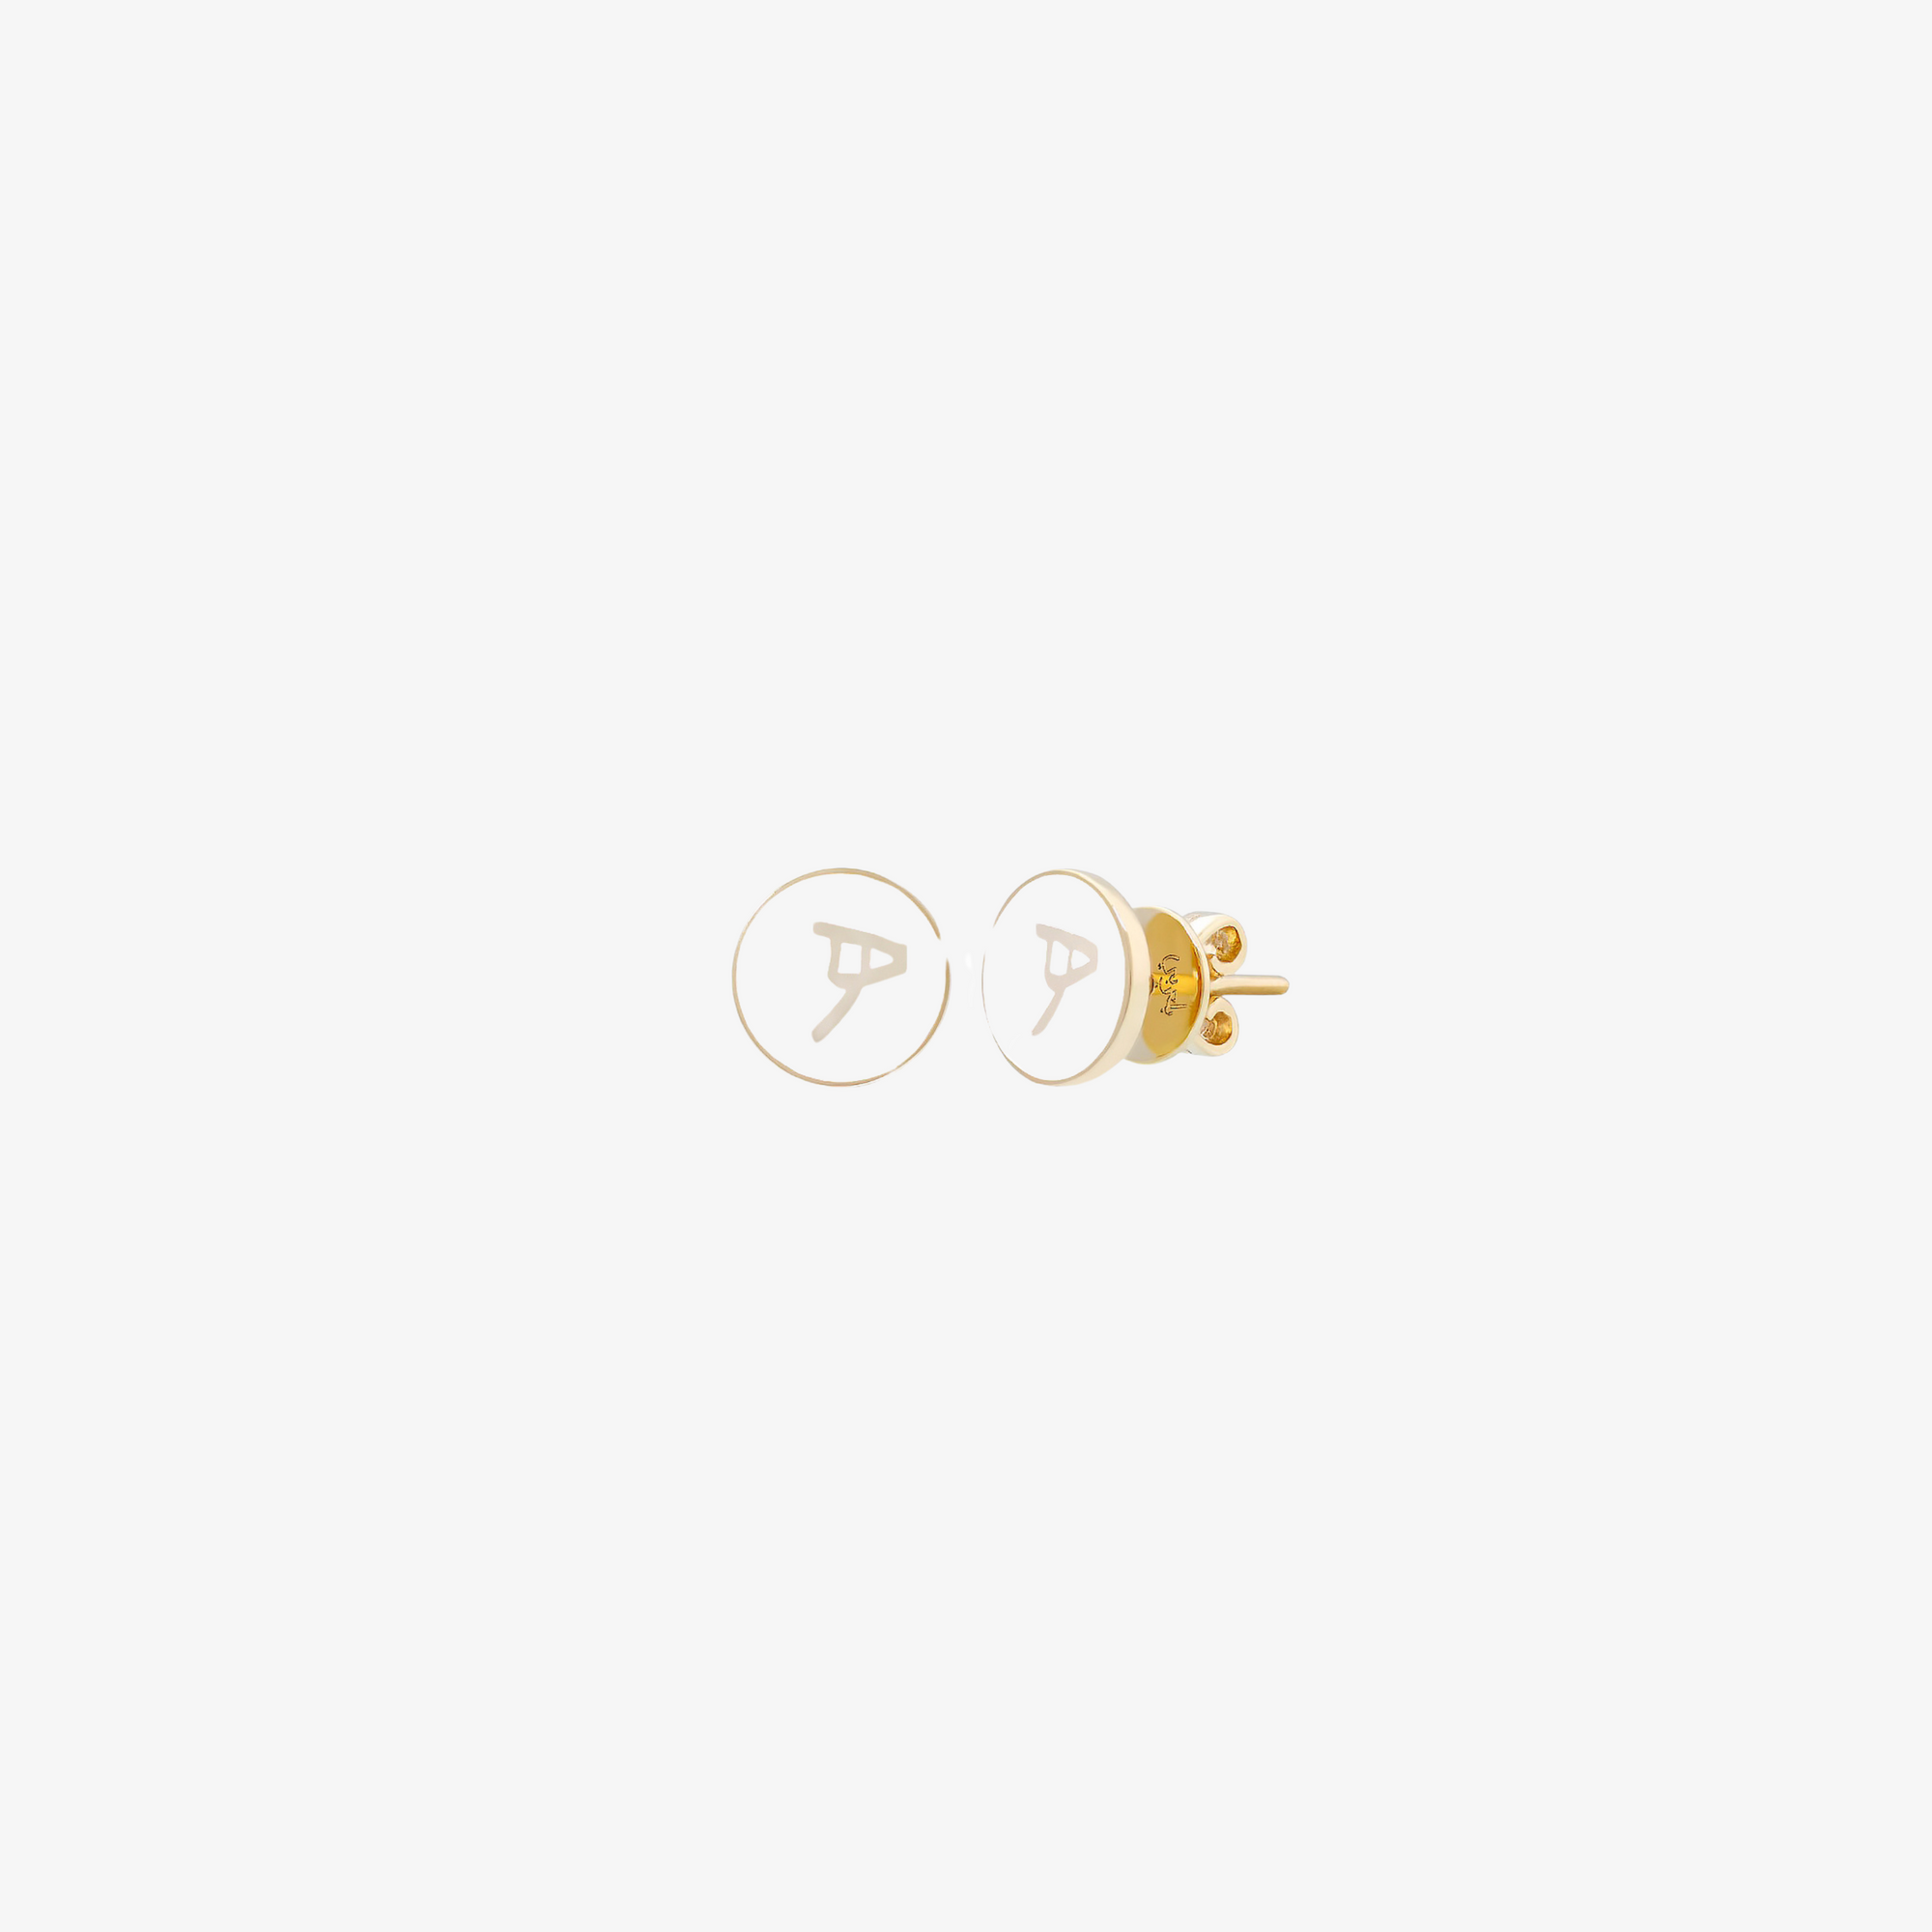 OULA — Gold & Enamel Letter Earrings